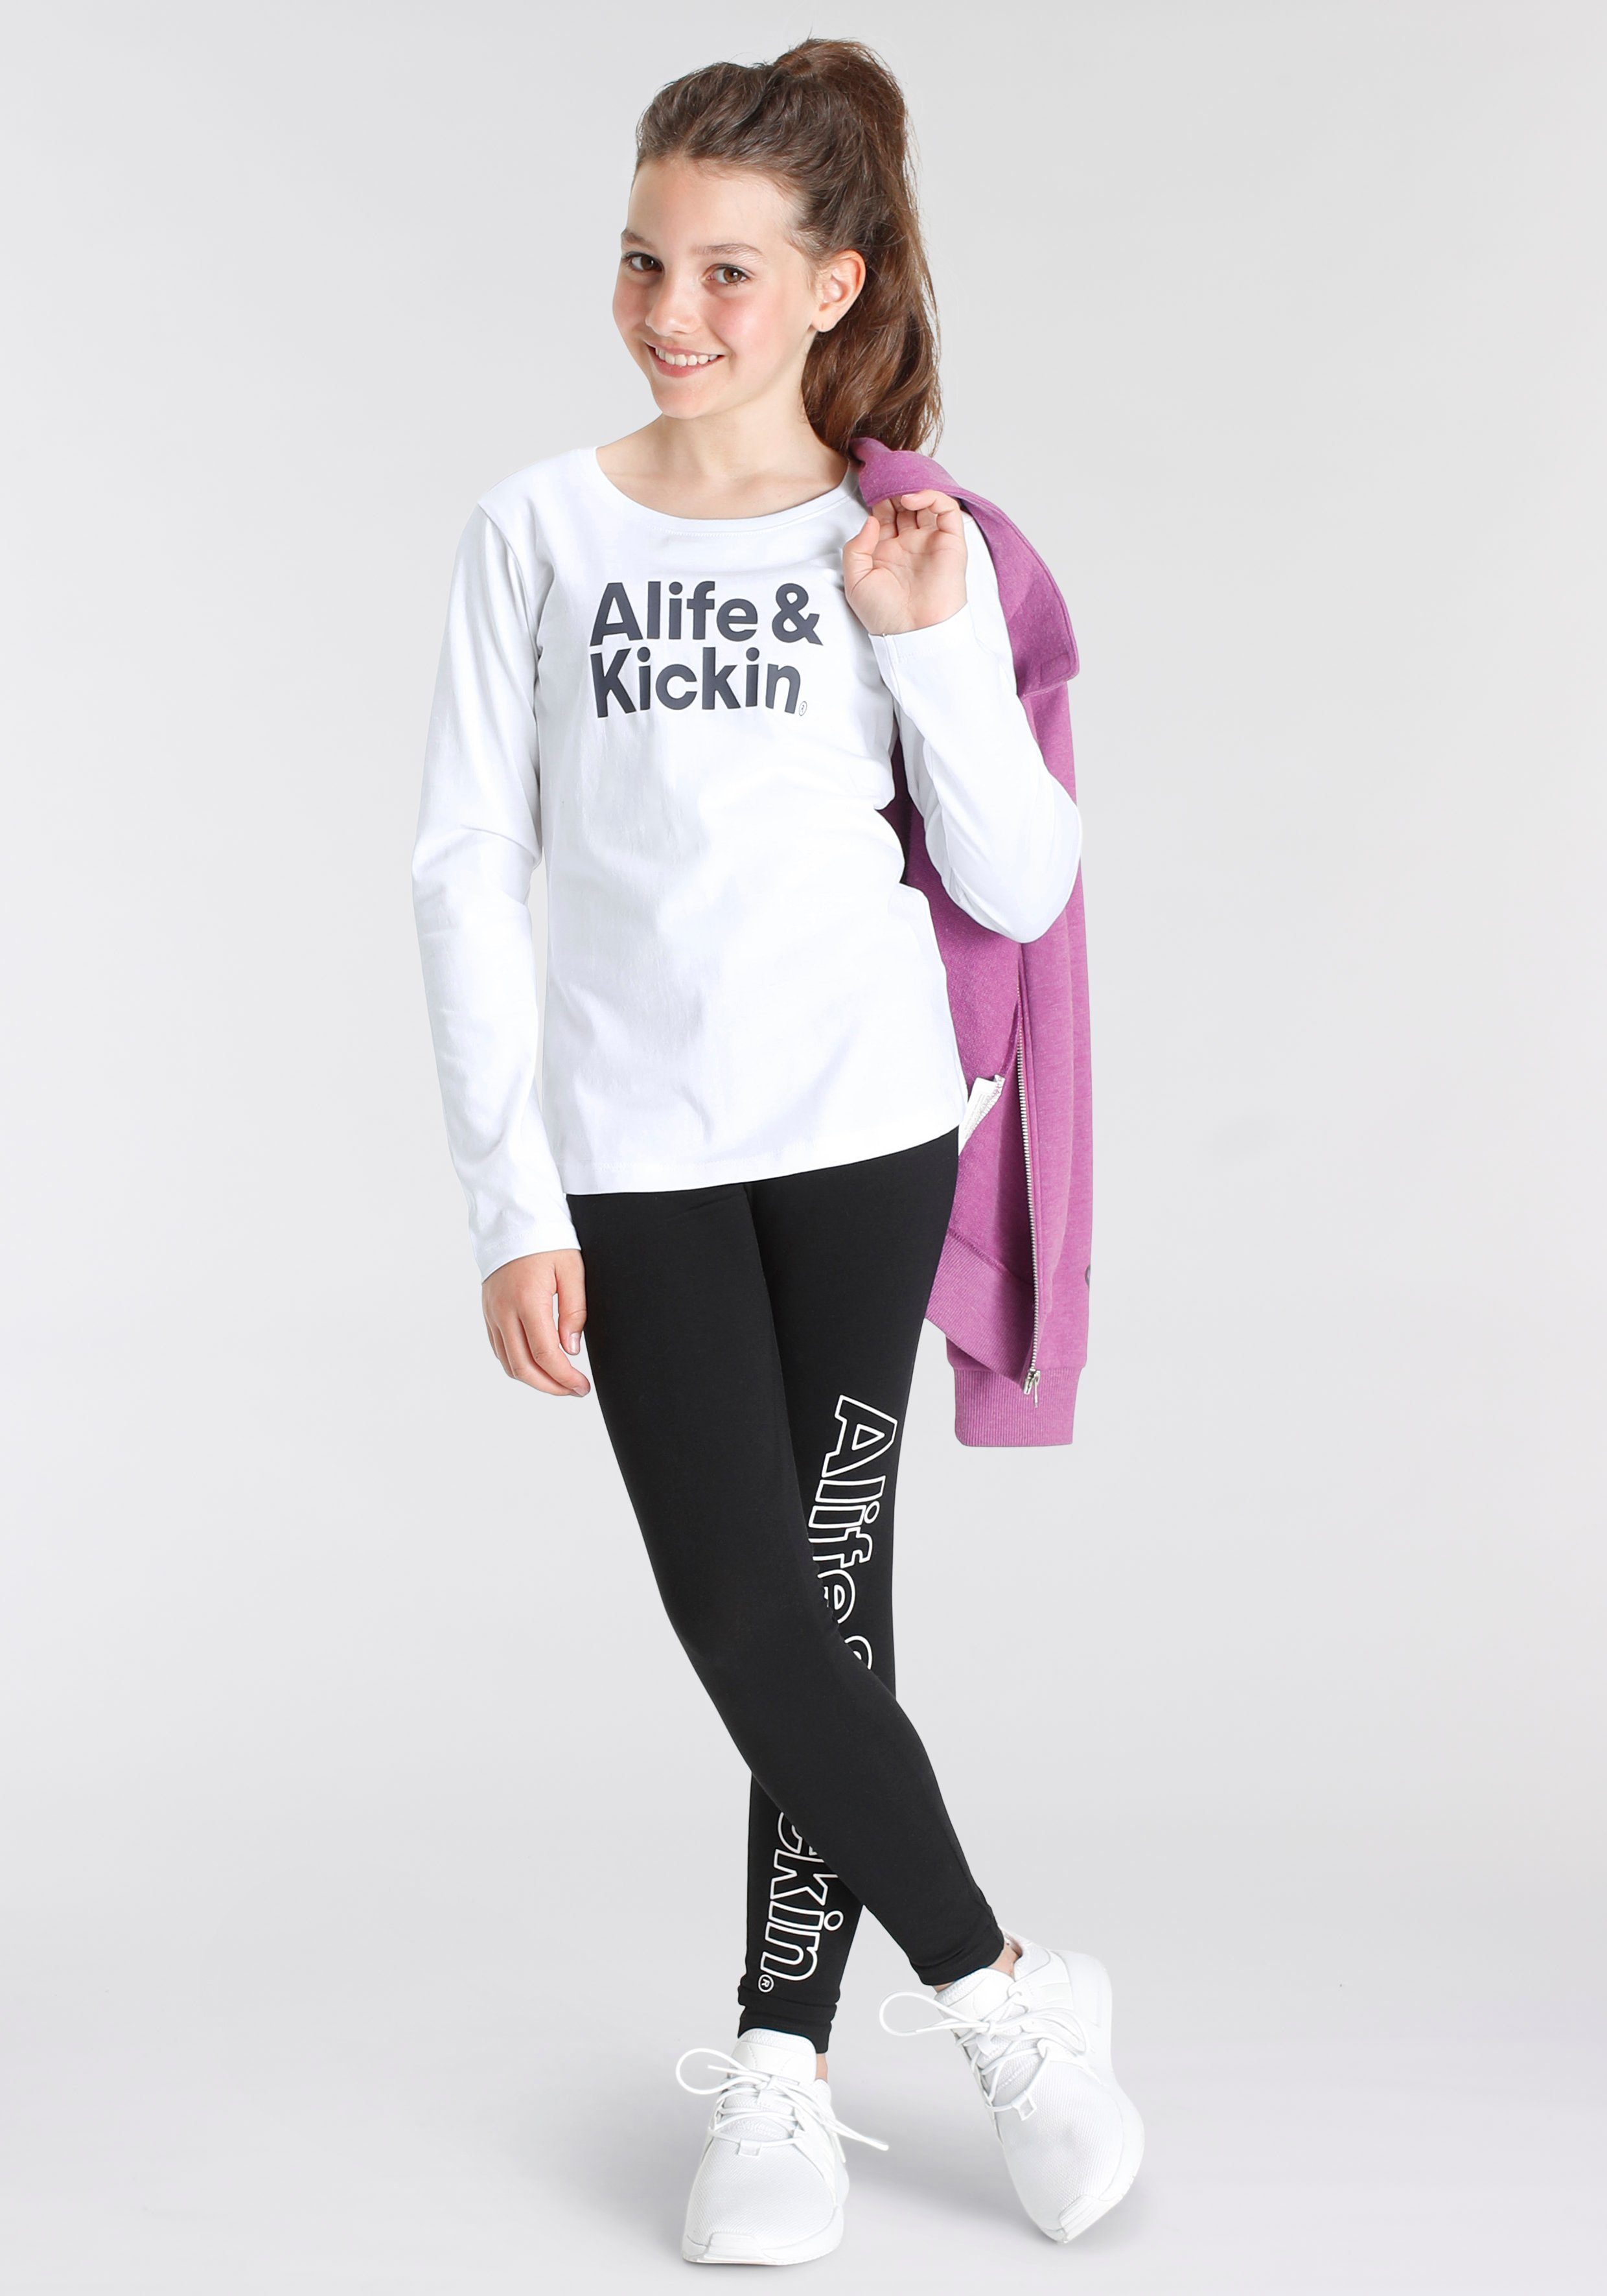 Kickin MARKE! Kids. & & Druck Alife mit Langarmshirt Alife Logo NEUE für Kickin